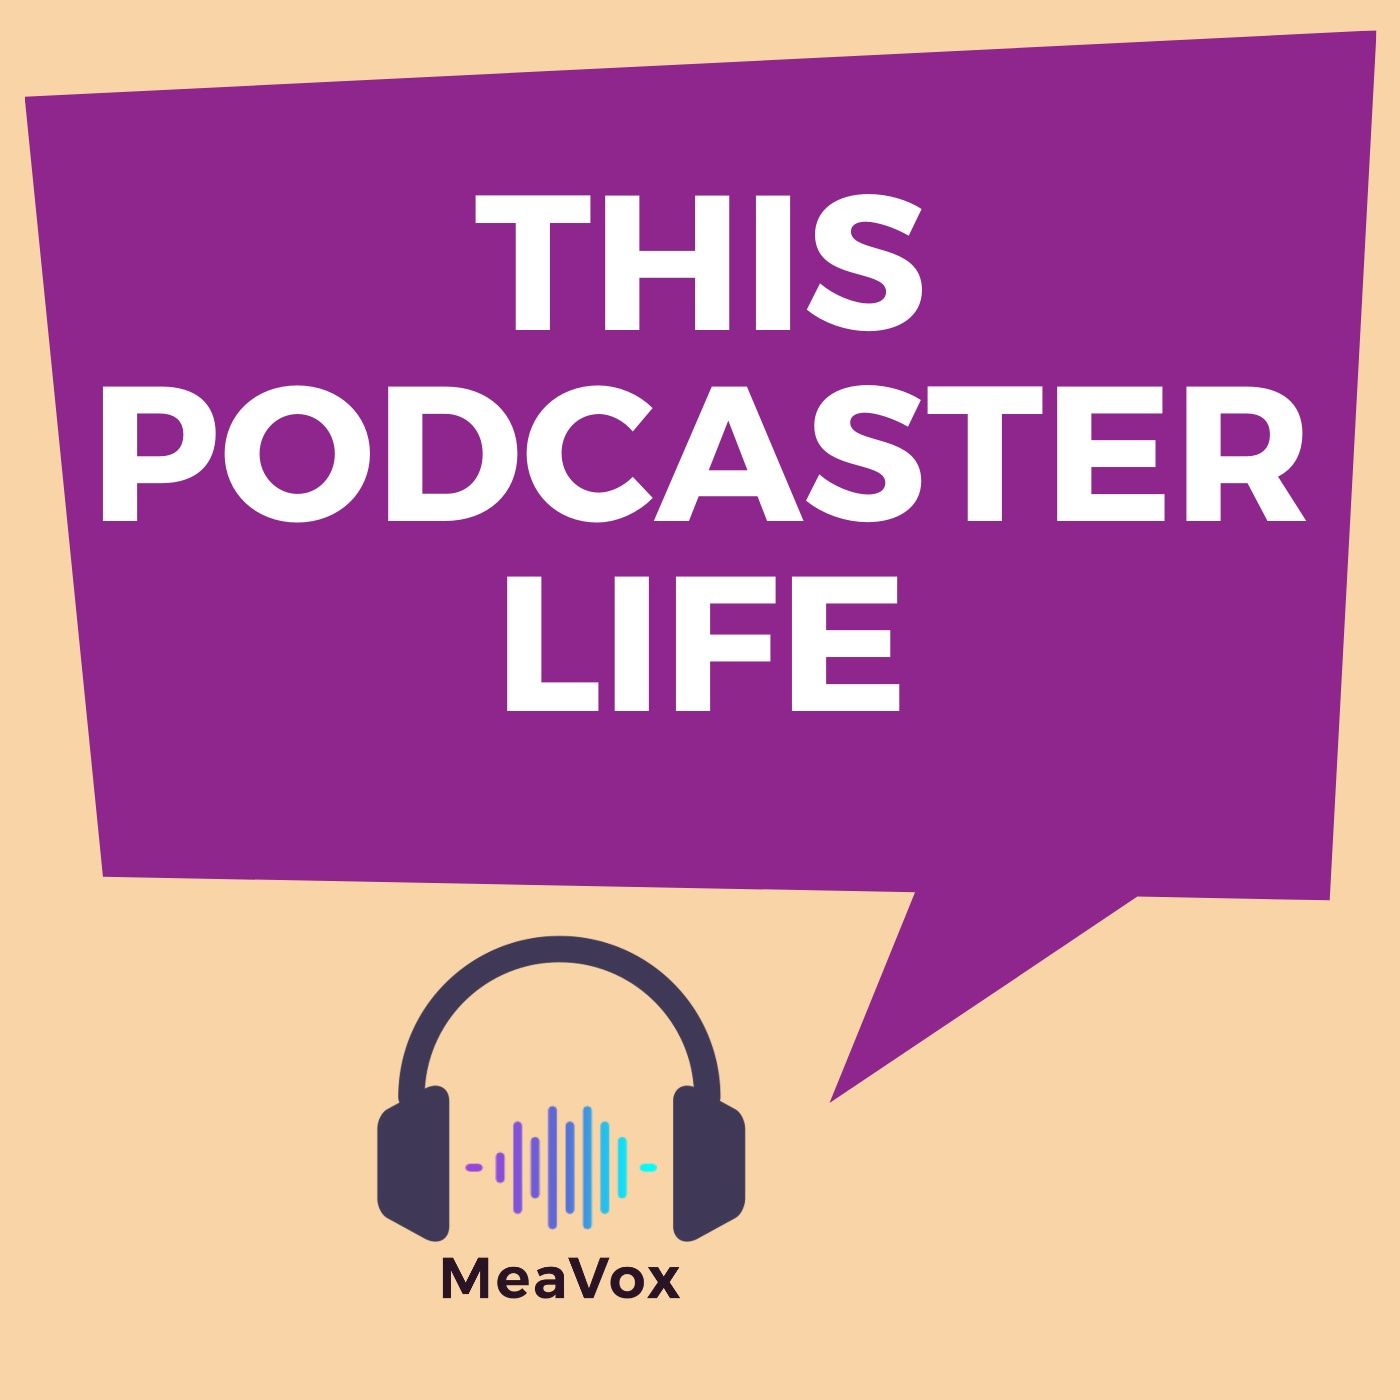 Will Podcast Kill The Radio Star?